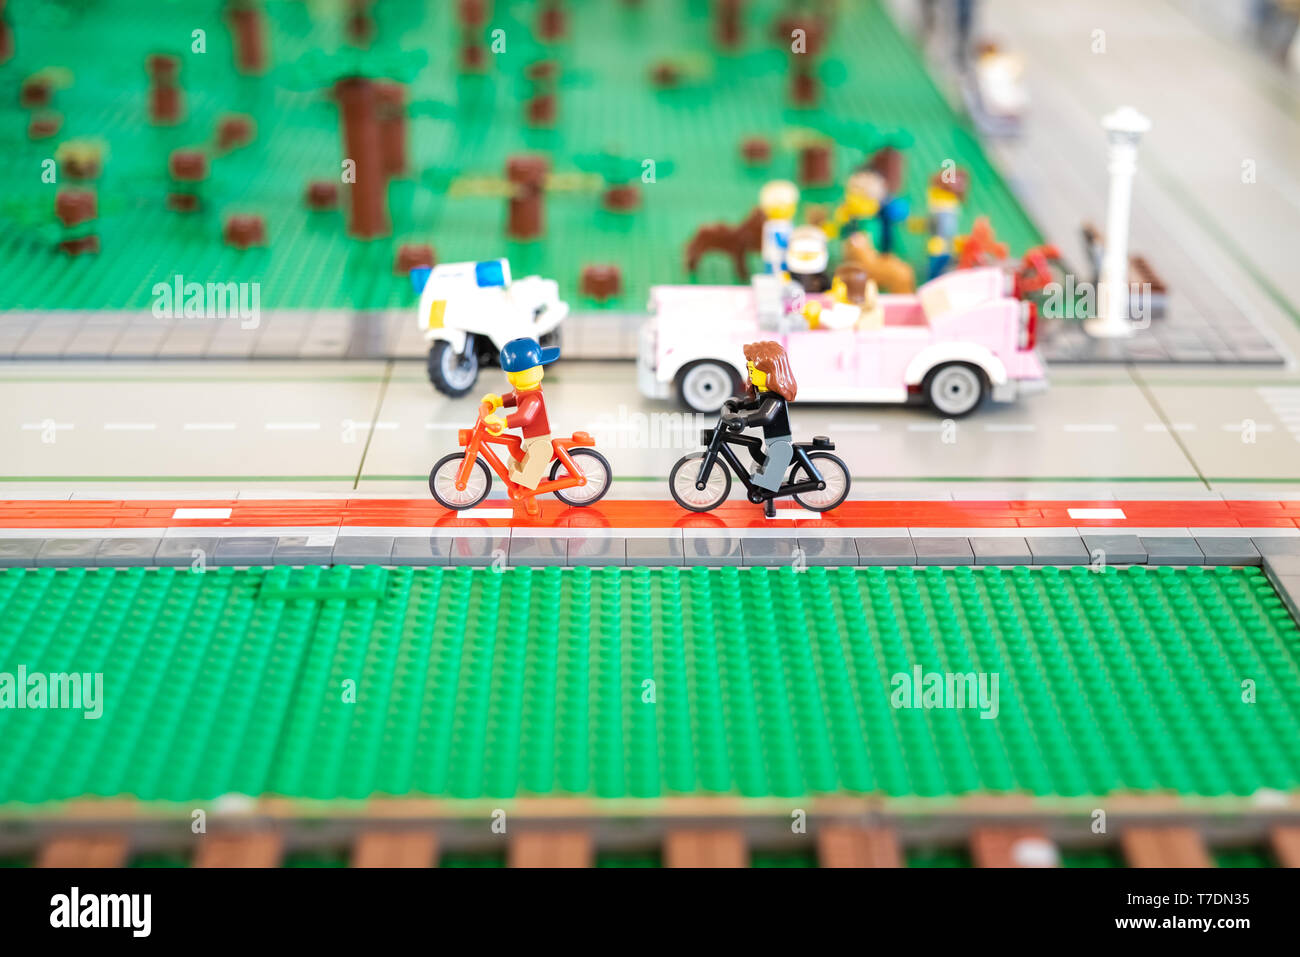 Valencia, Spanien - 3. April 2019: Zwei Lego Figuren der städtischen  Radfahrer, durch die Stadt zu gehen Stockfotografie - Alamy